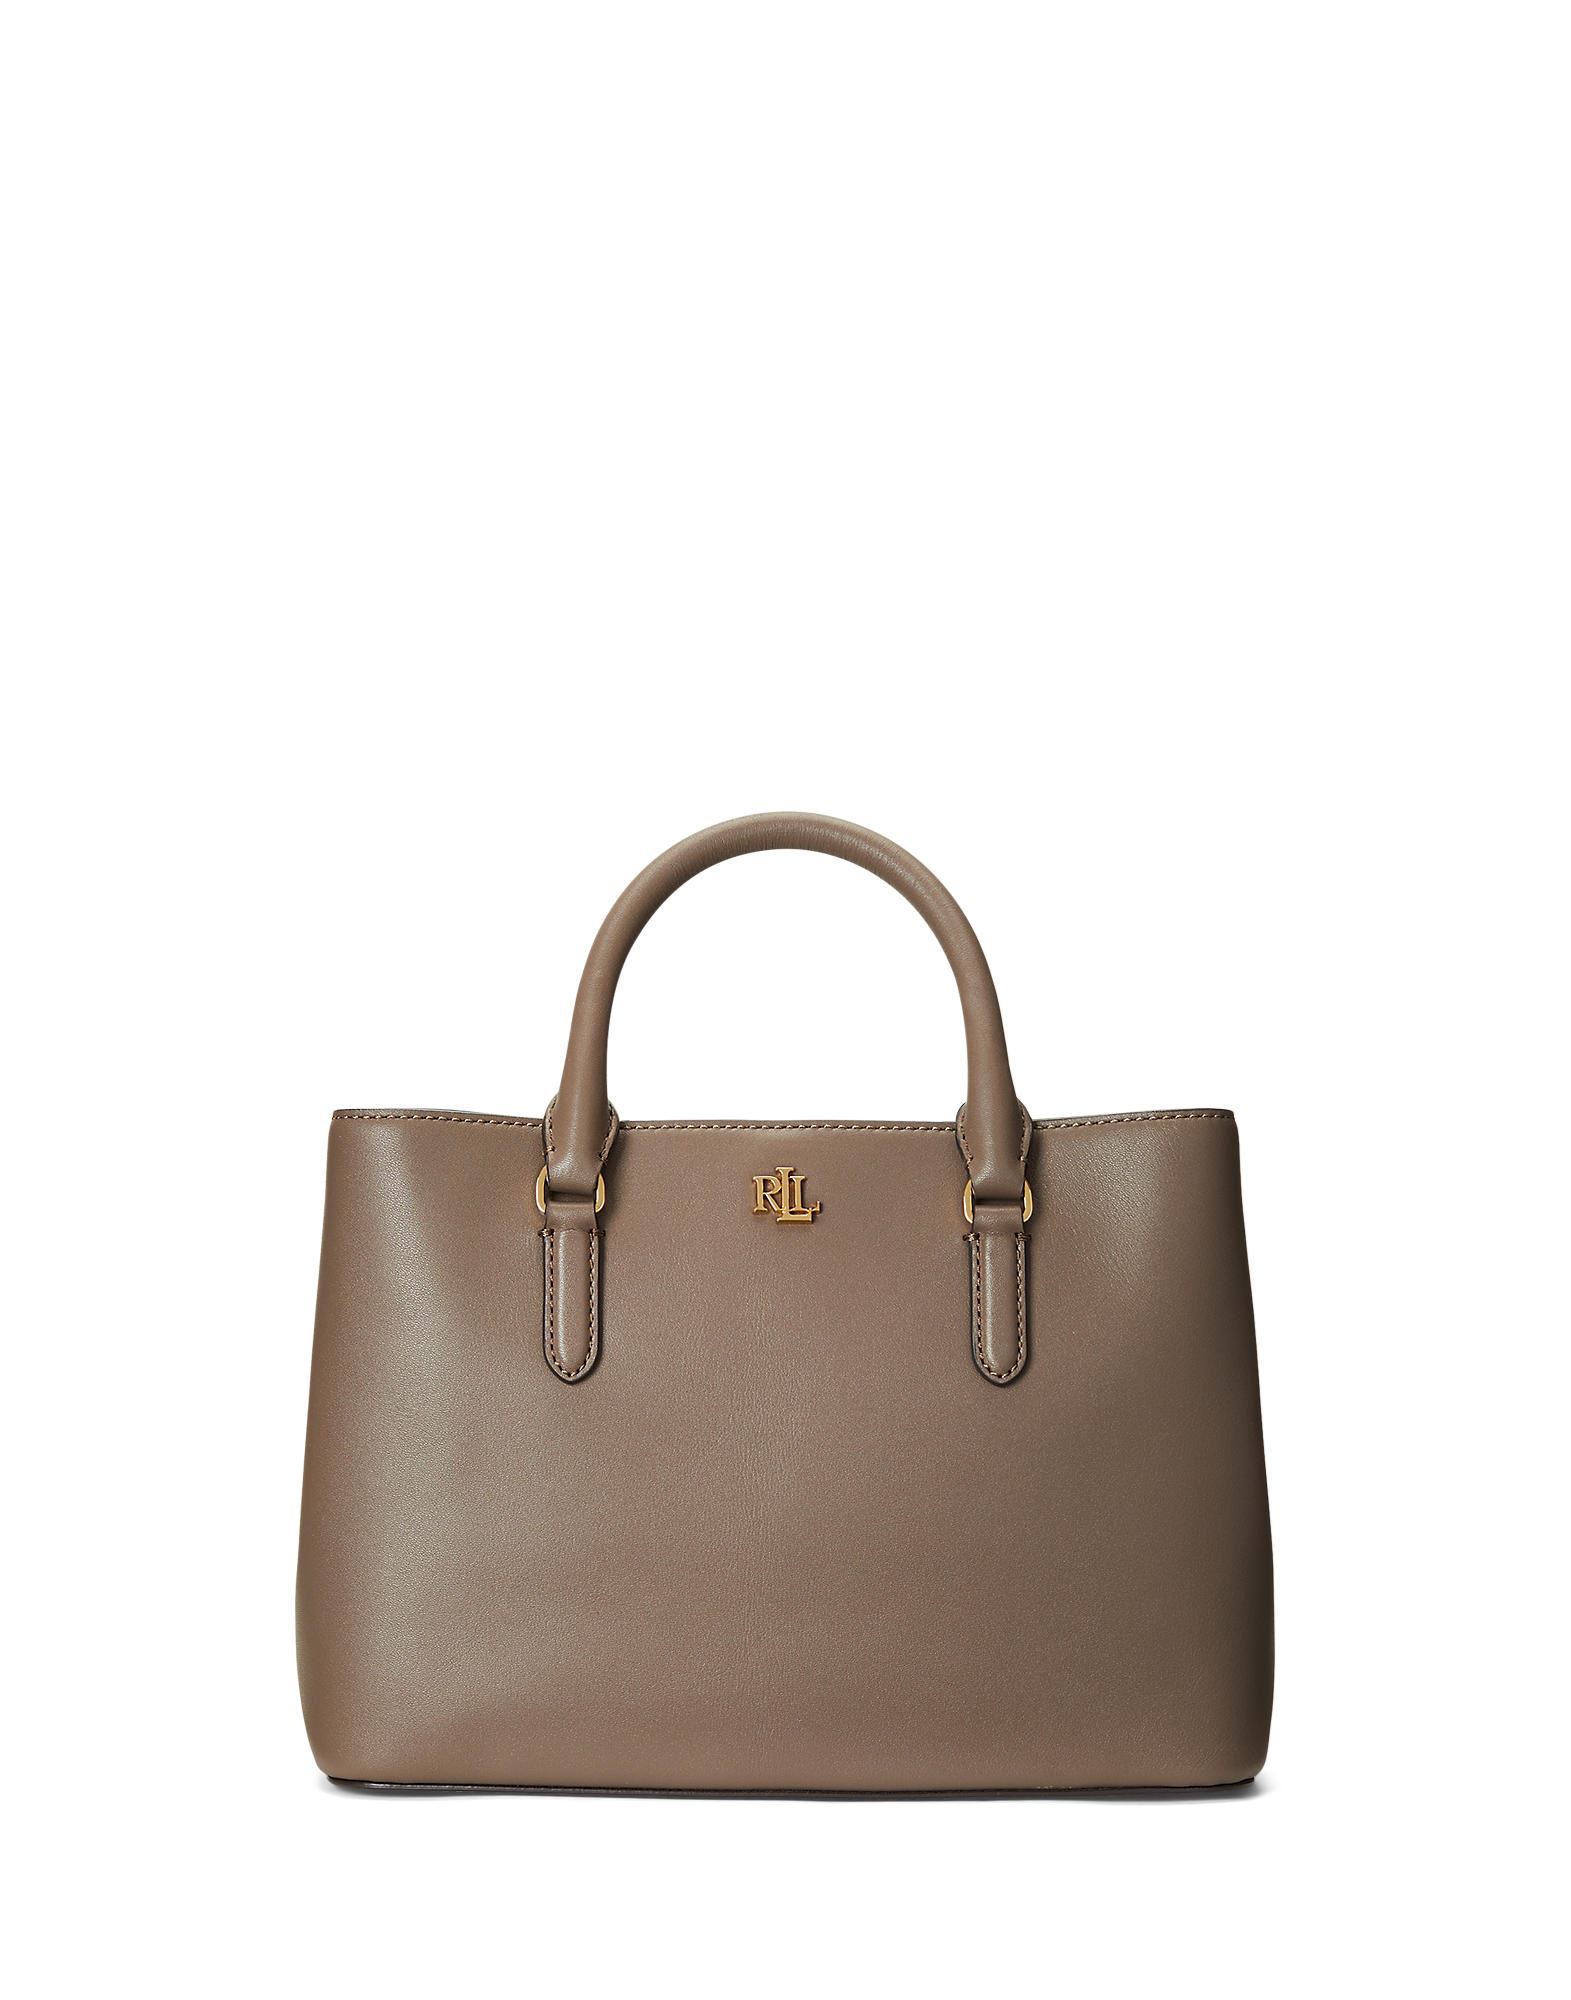 Lauren Ralph Lauren Handbags In Dove Grey